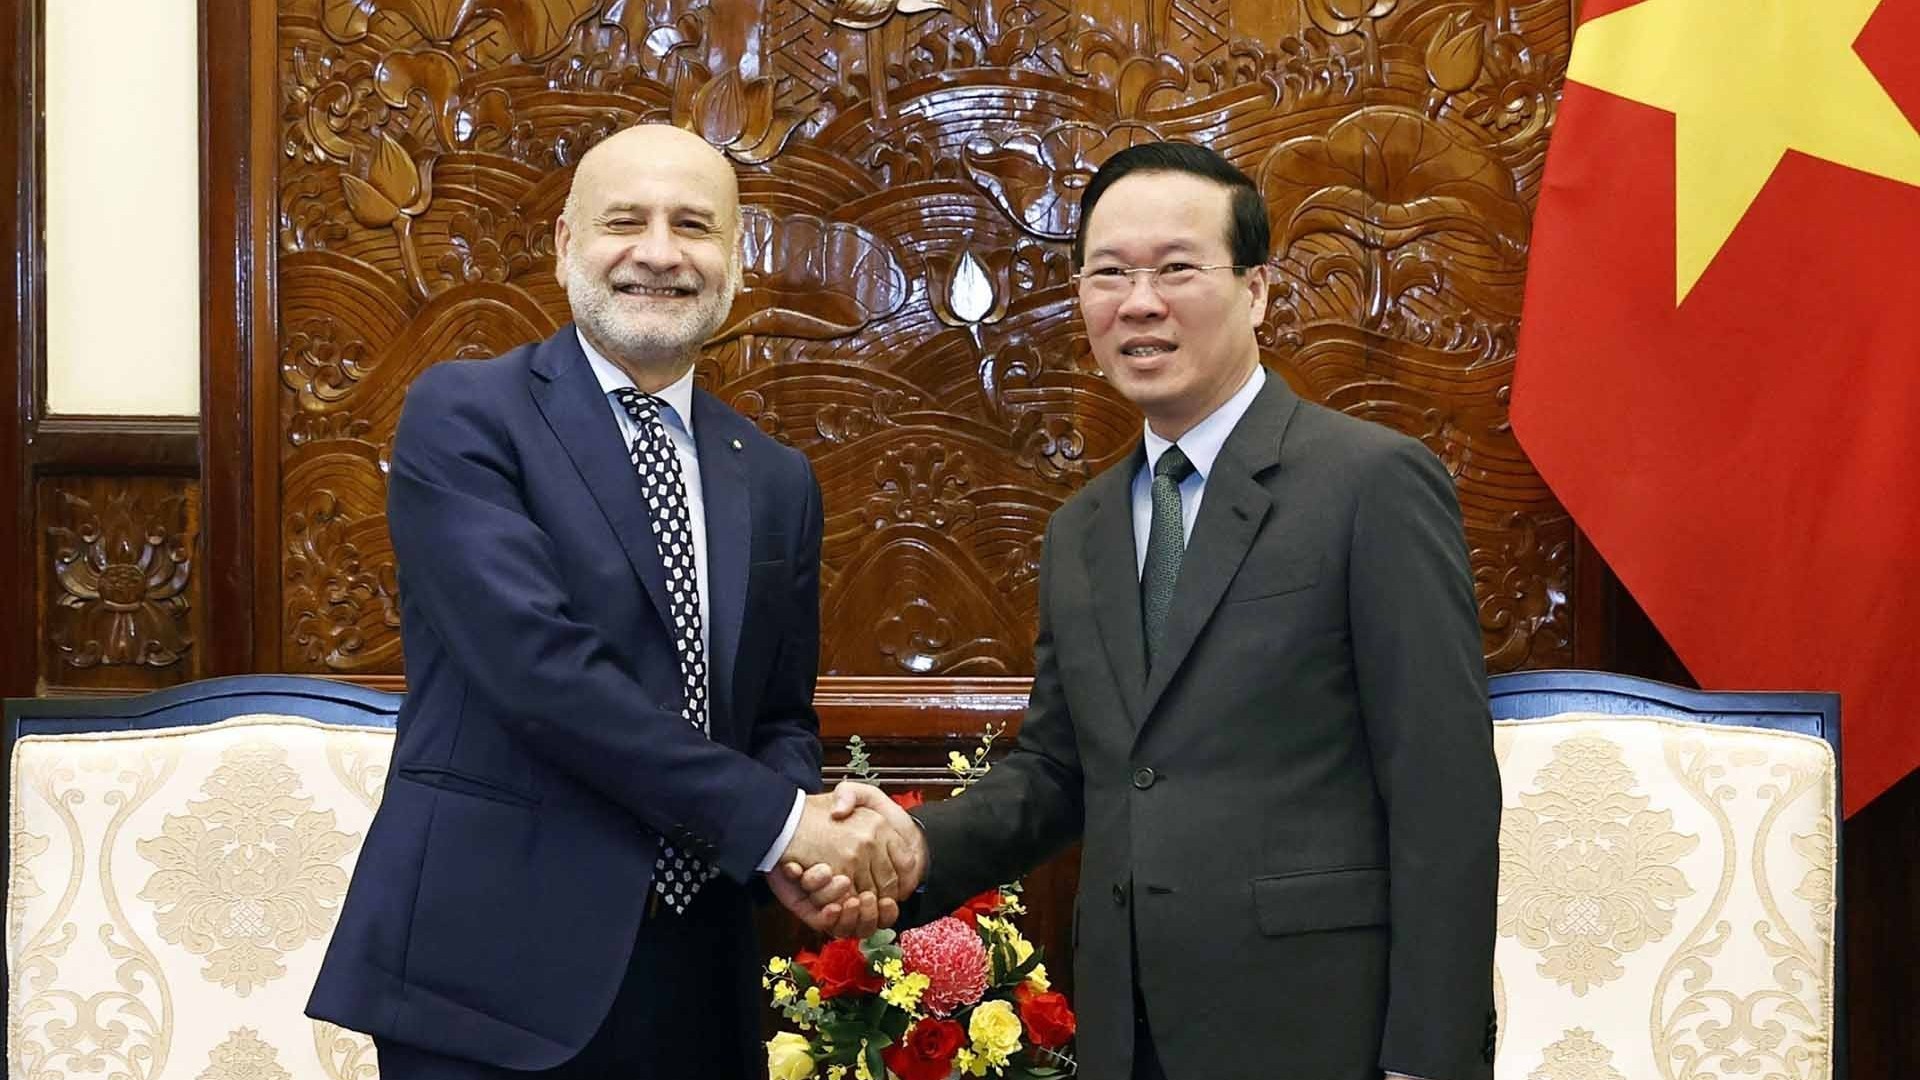 Chủ tịch nước Võ Văn Thưởng tiếp Đại sứ Italy chào từ biệt kết thúc nhiệm kỳ công tác tại Việt Nam